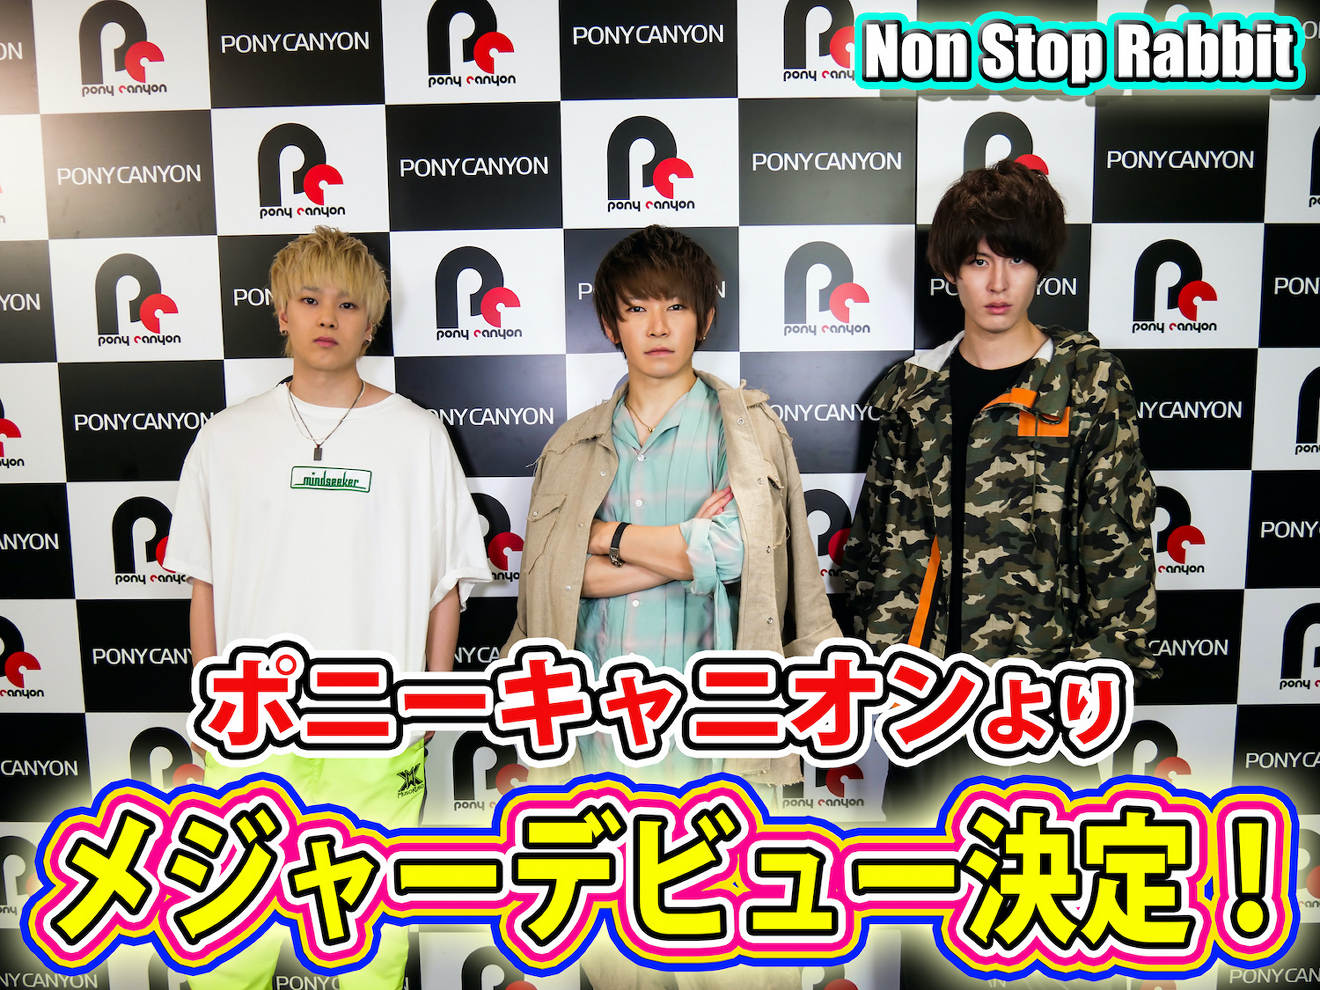 Non Stop Rabbit メジャーデビュー決定 12月にアルバム発売 Barks